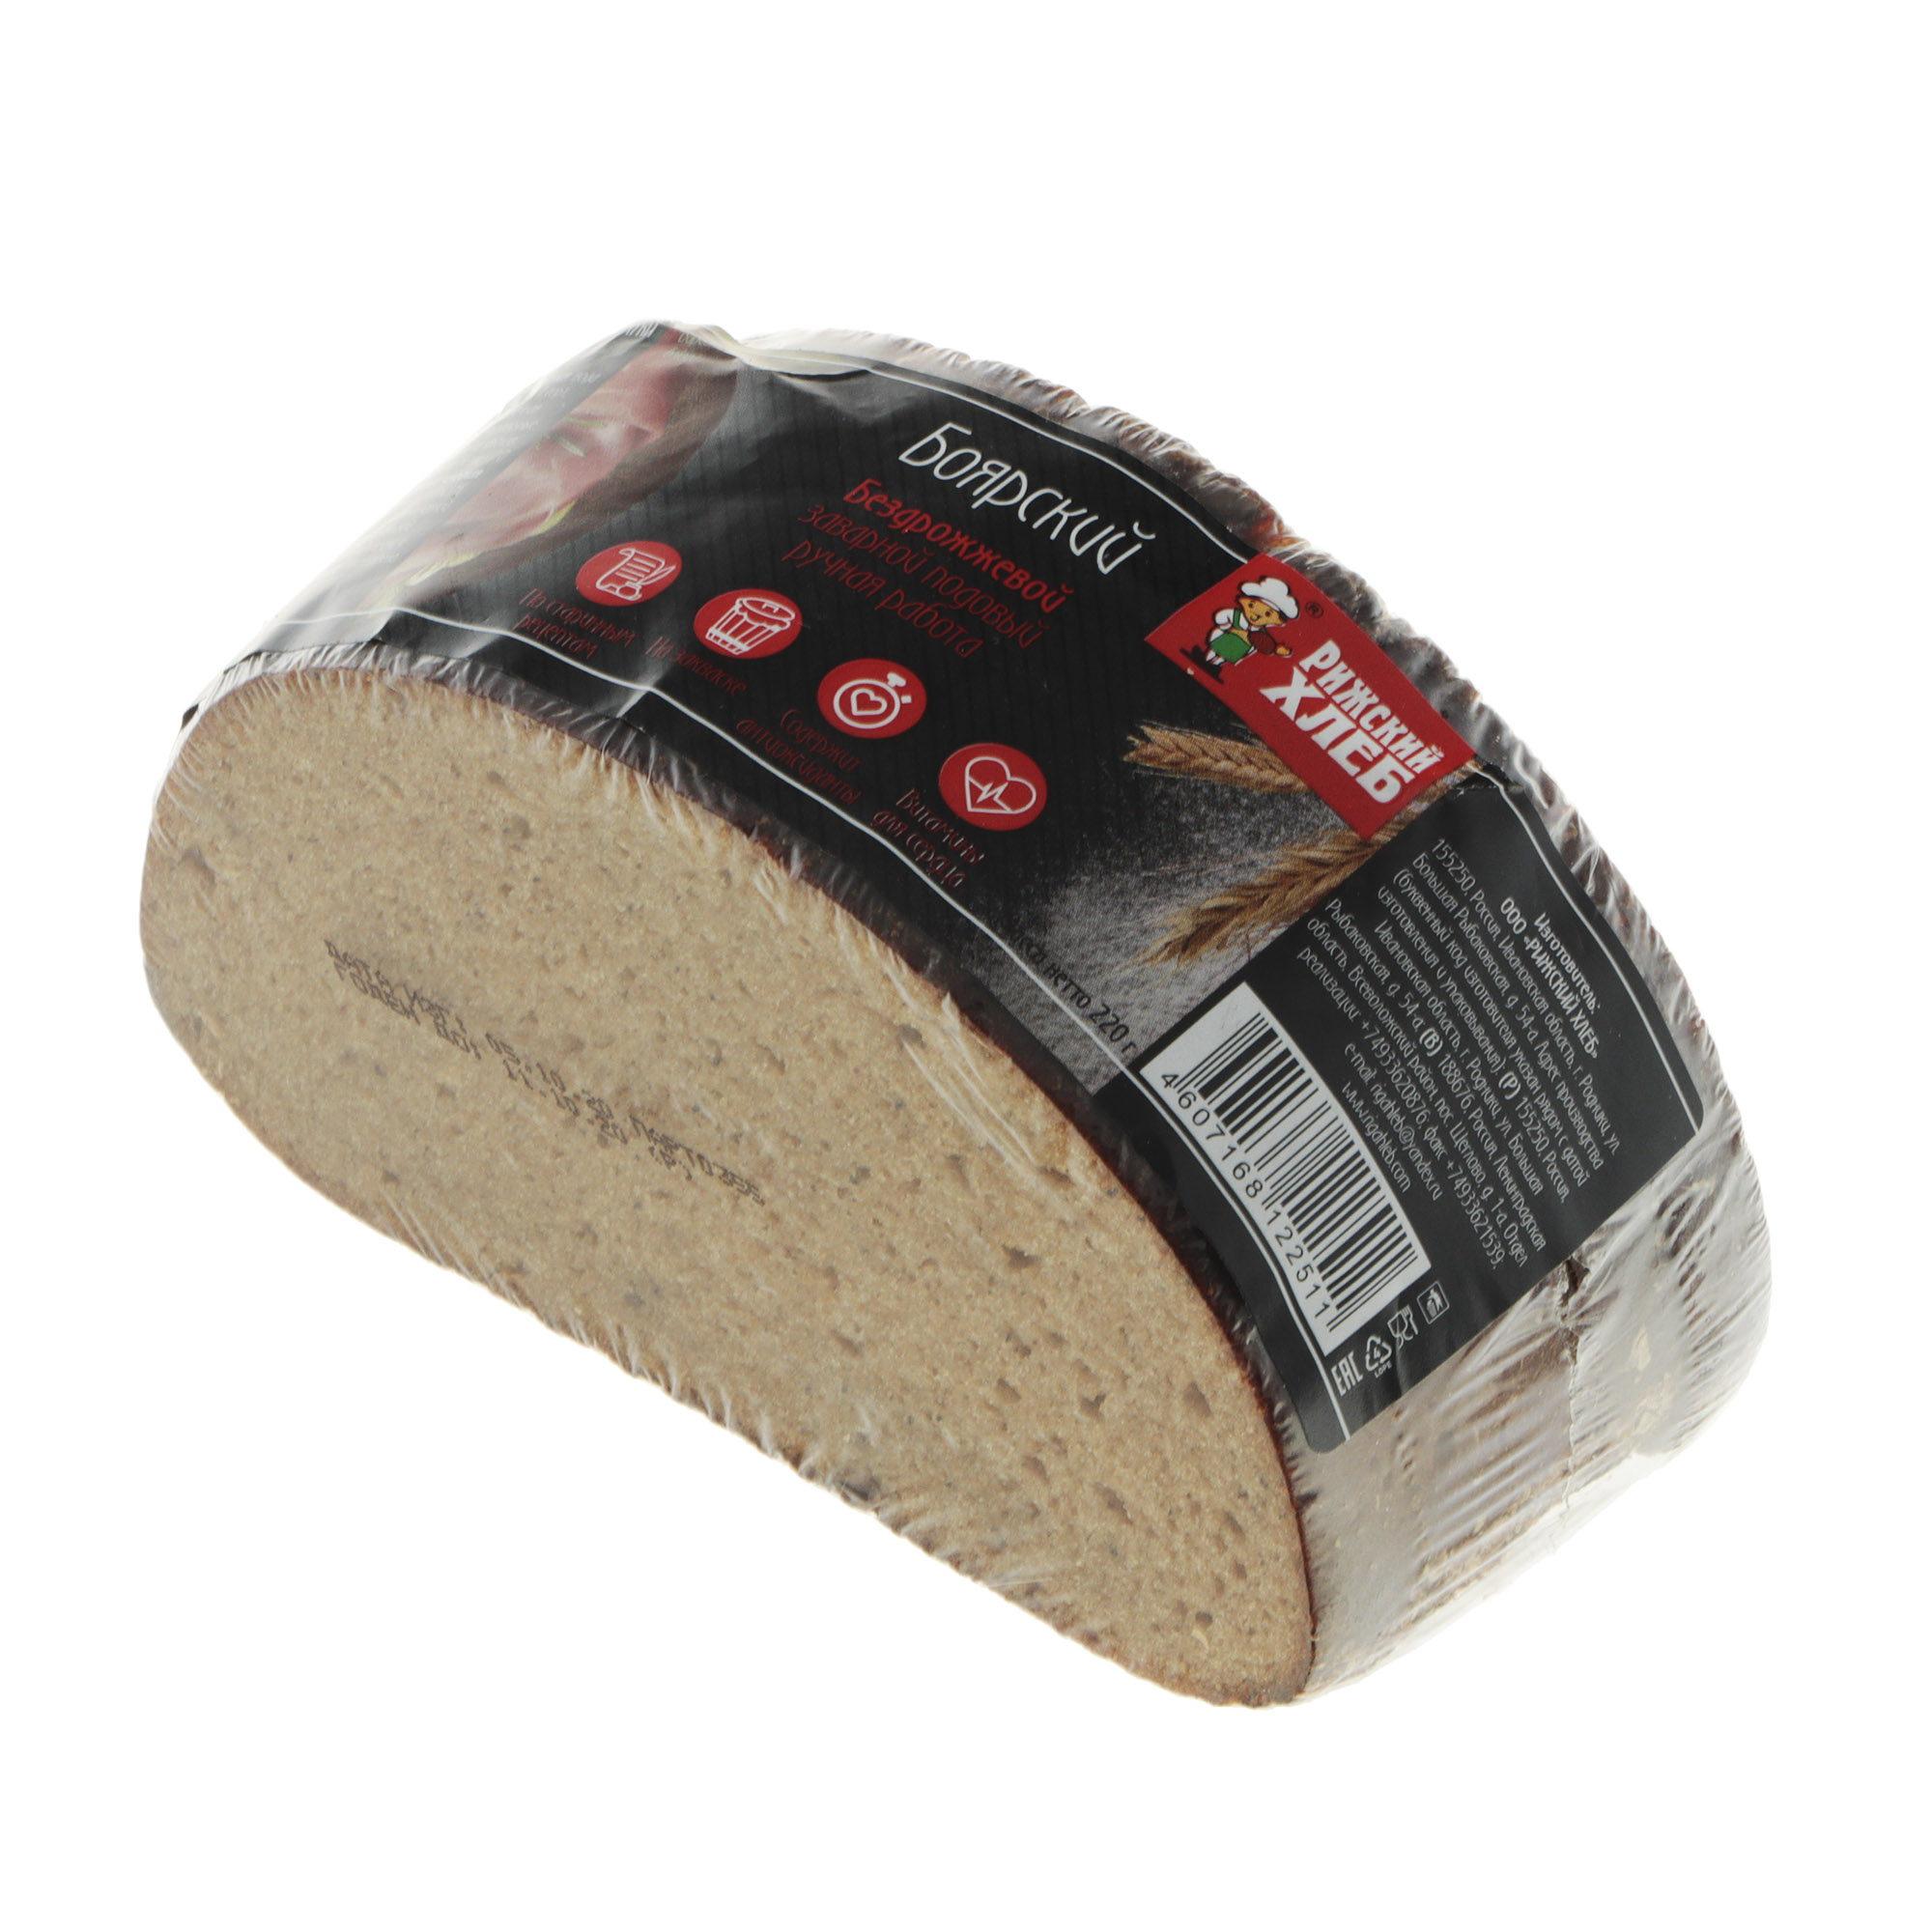 Хлеб Рижский хлеб боярский 220 г хлебцы ржаные цельнозерновые wasa 275 гр